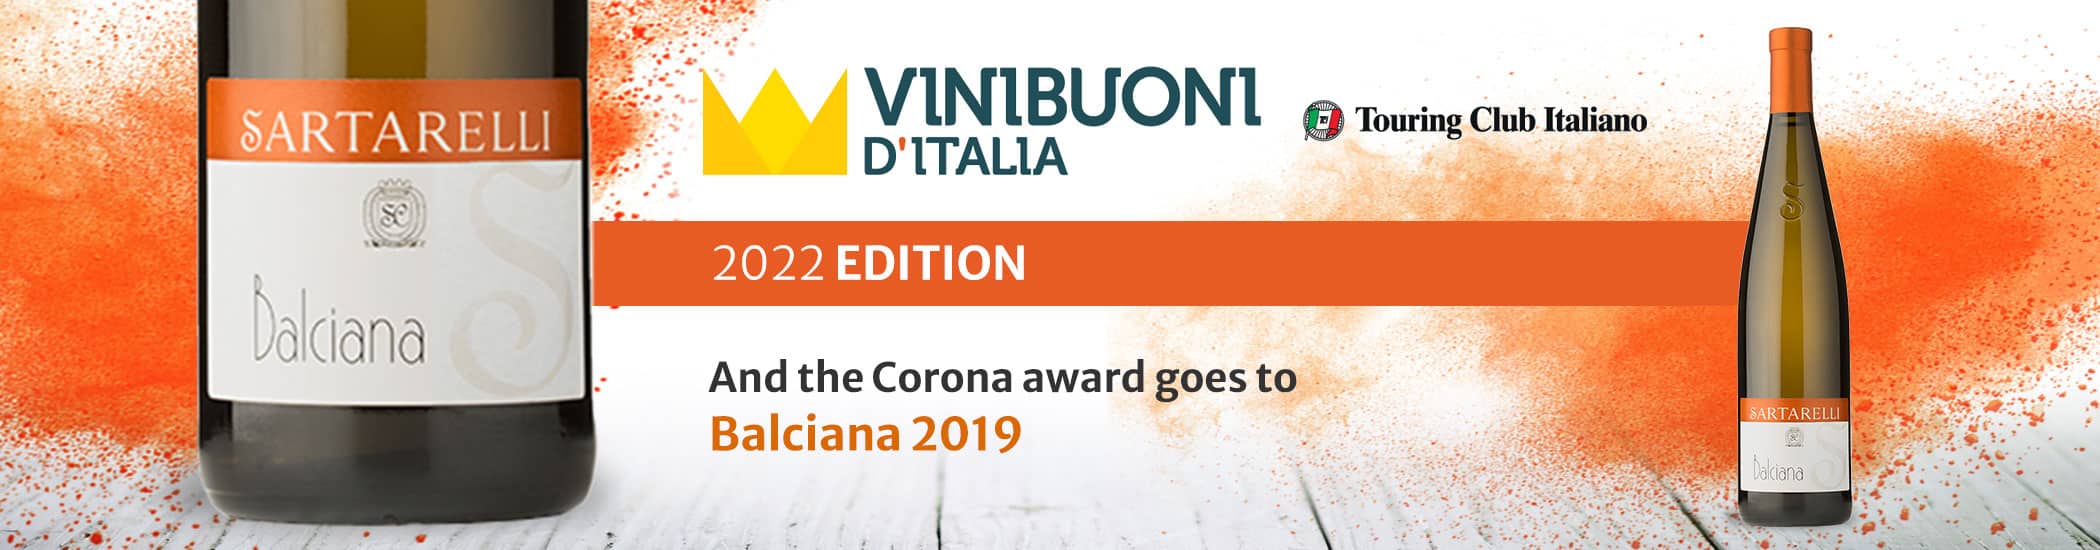 Sartarelli-Balciana 2019-Corona 2022 (News-Eng)